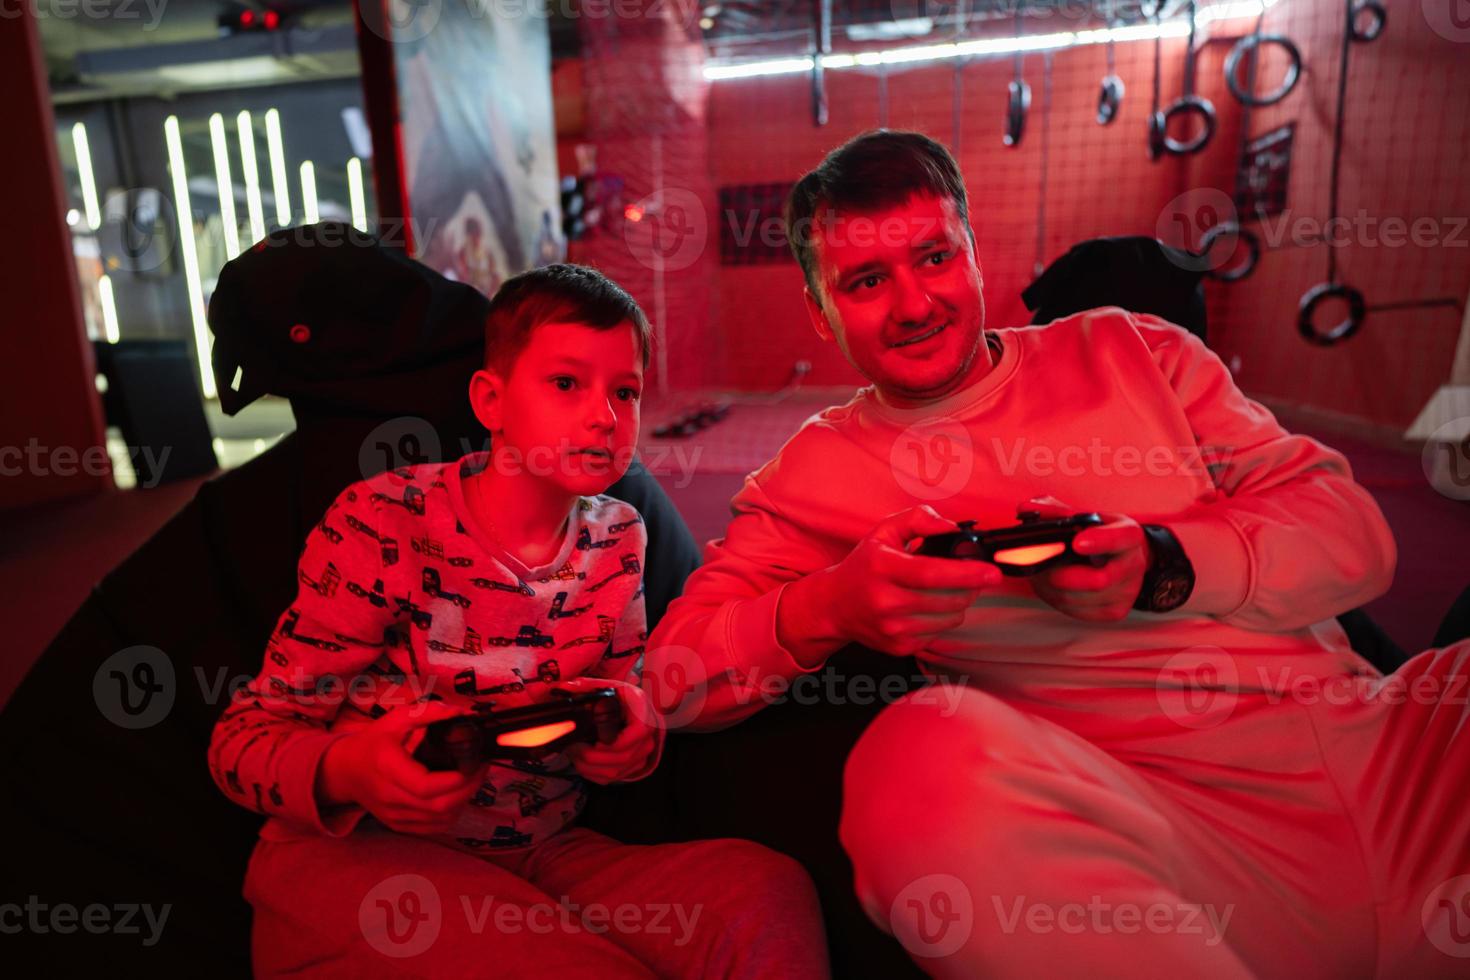 vader en zoon Speel gamepad video spel troosten in rood gaming kamer. vader en kind gamers. foto